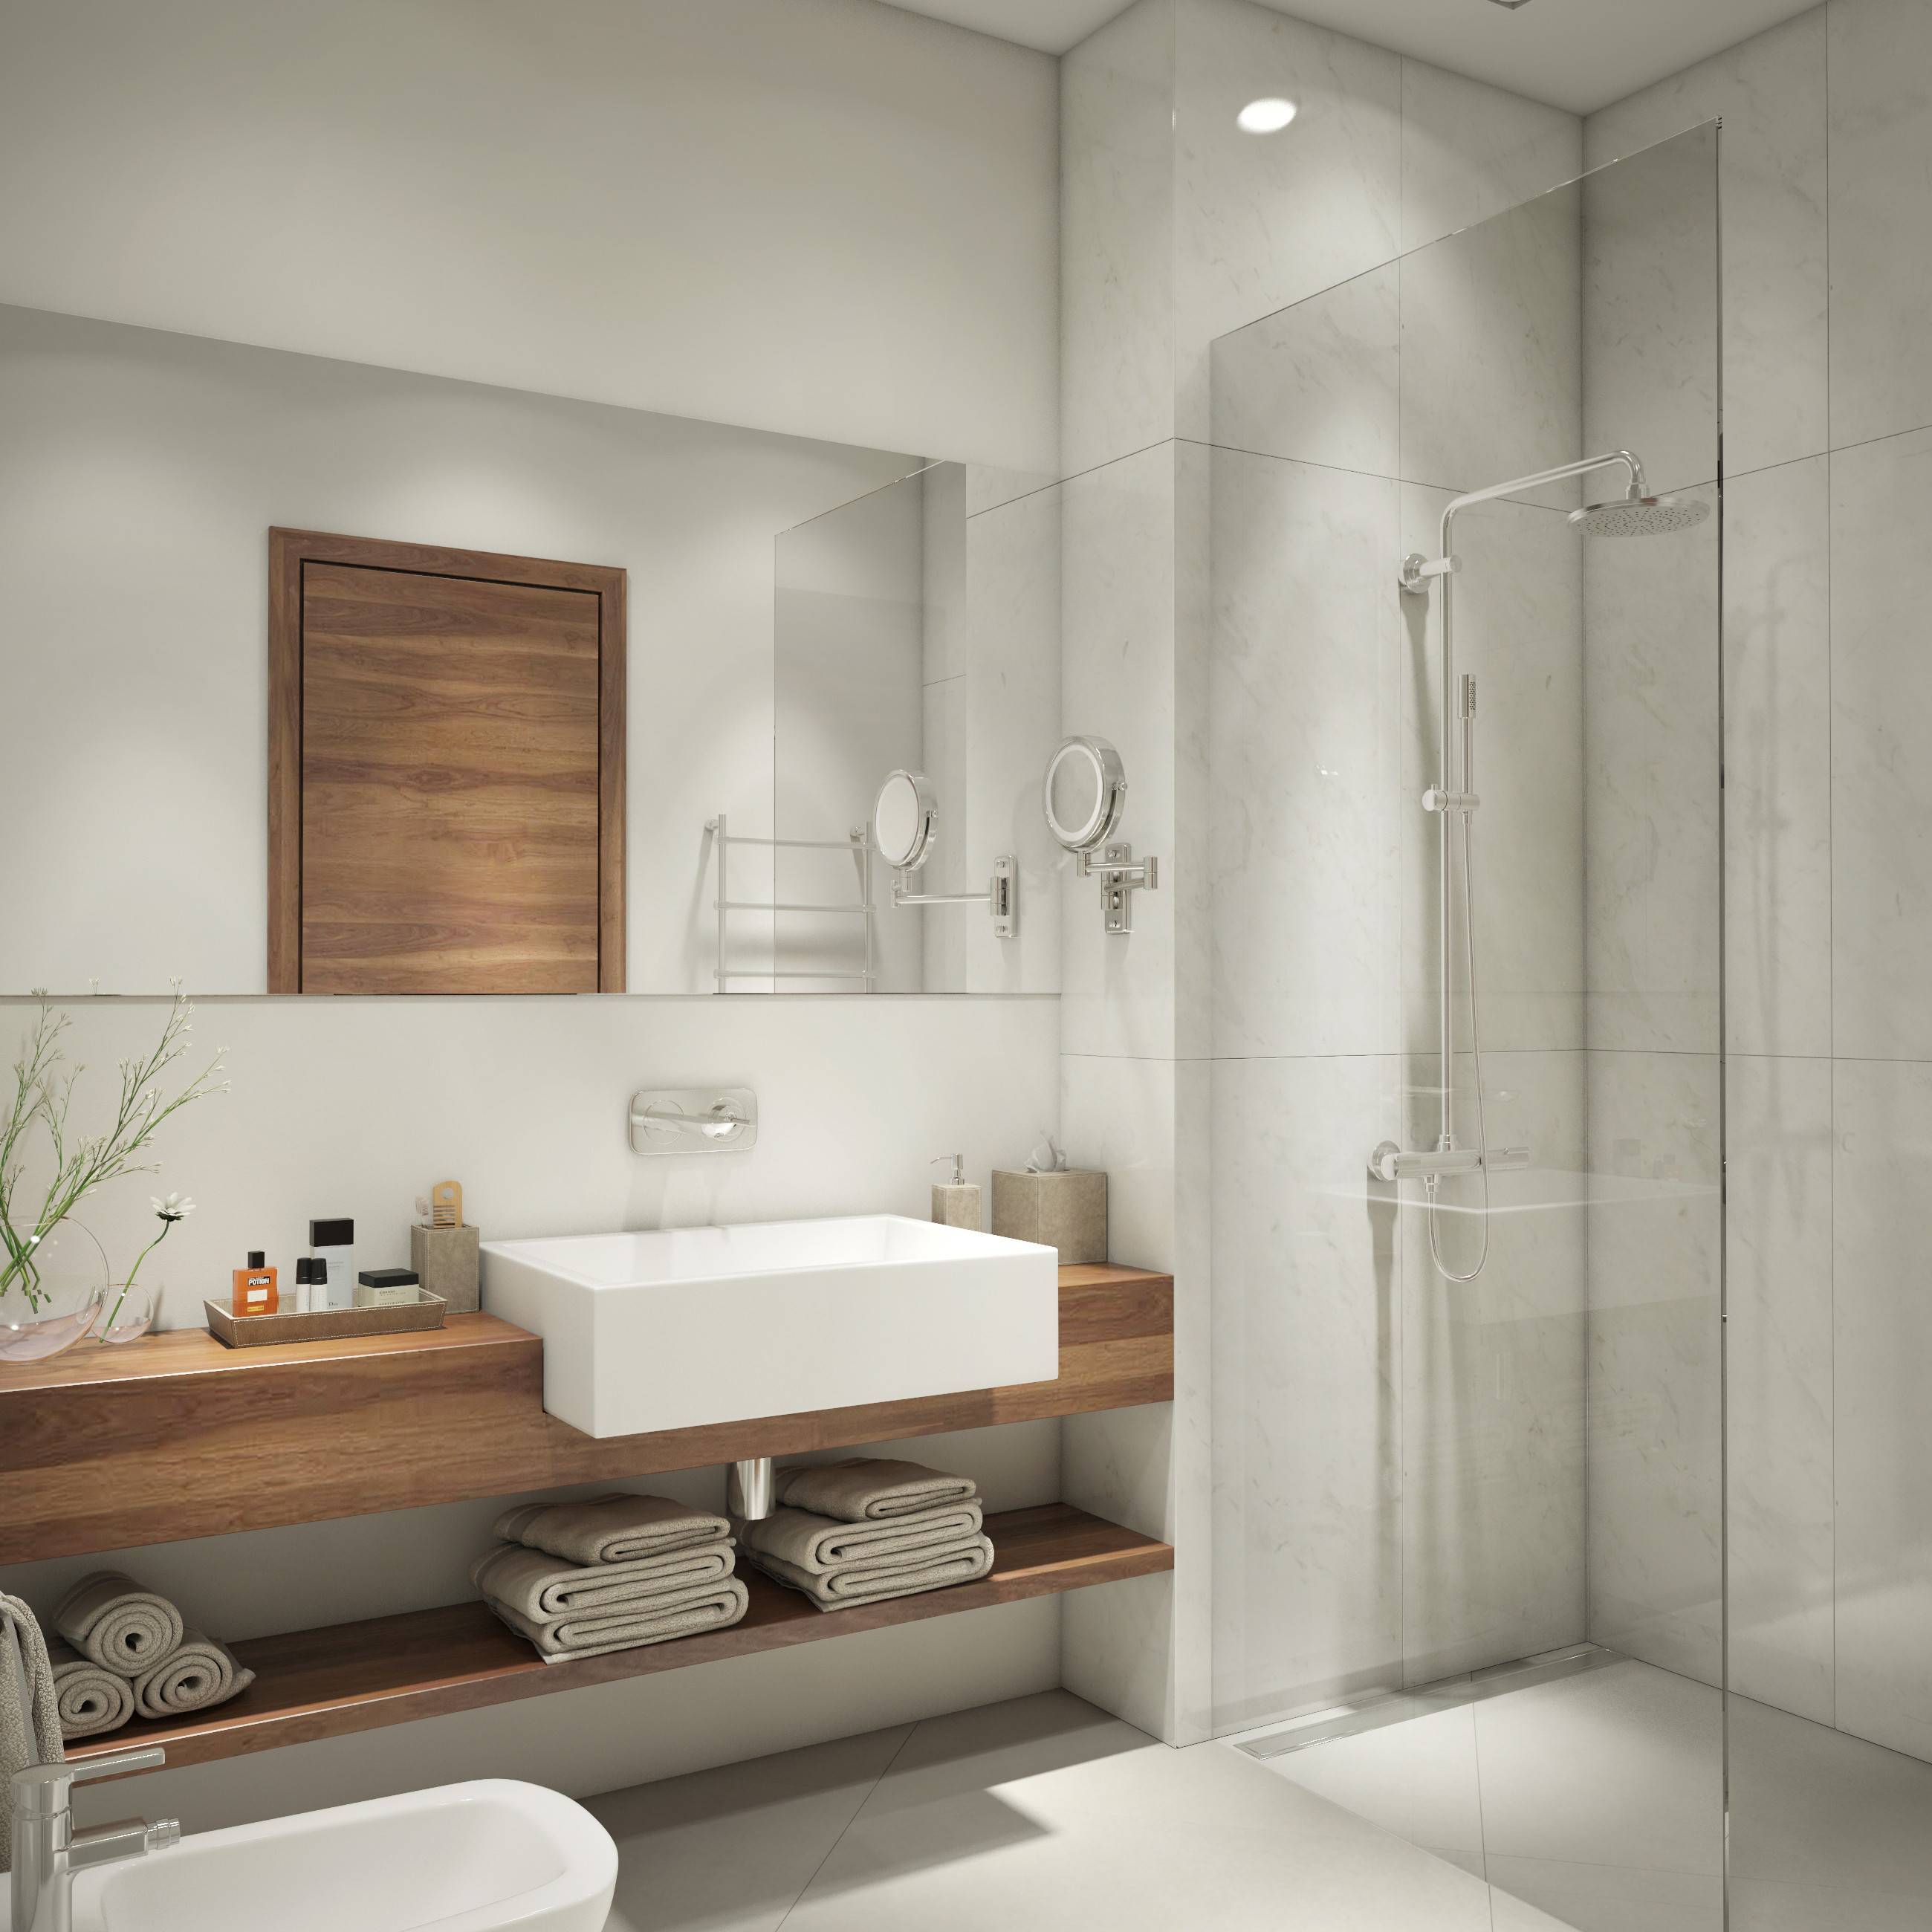 Ванная в скандинавском стиле: дизайн комнаты, идеи для плитки, туалета - 26 фото